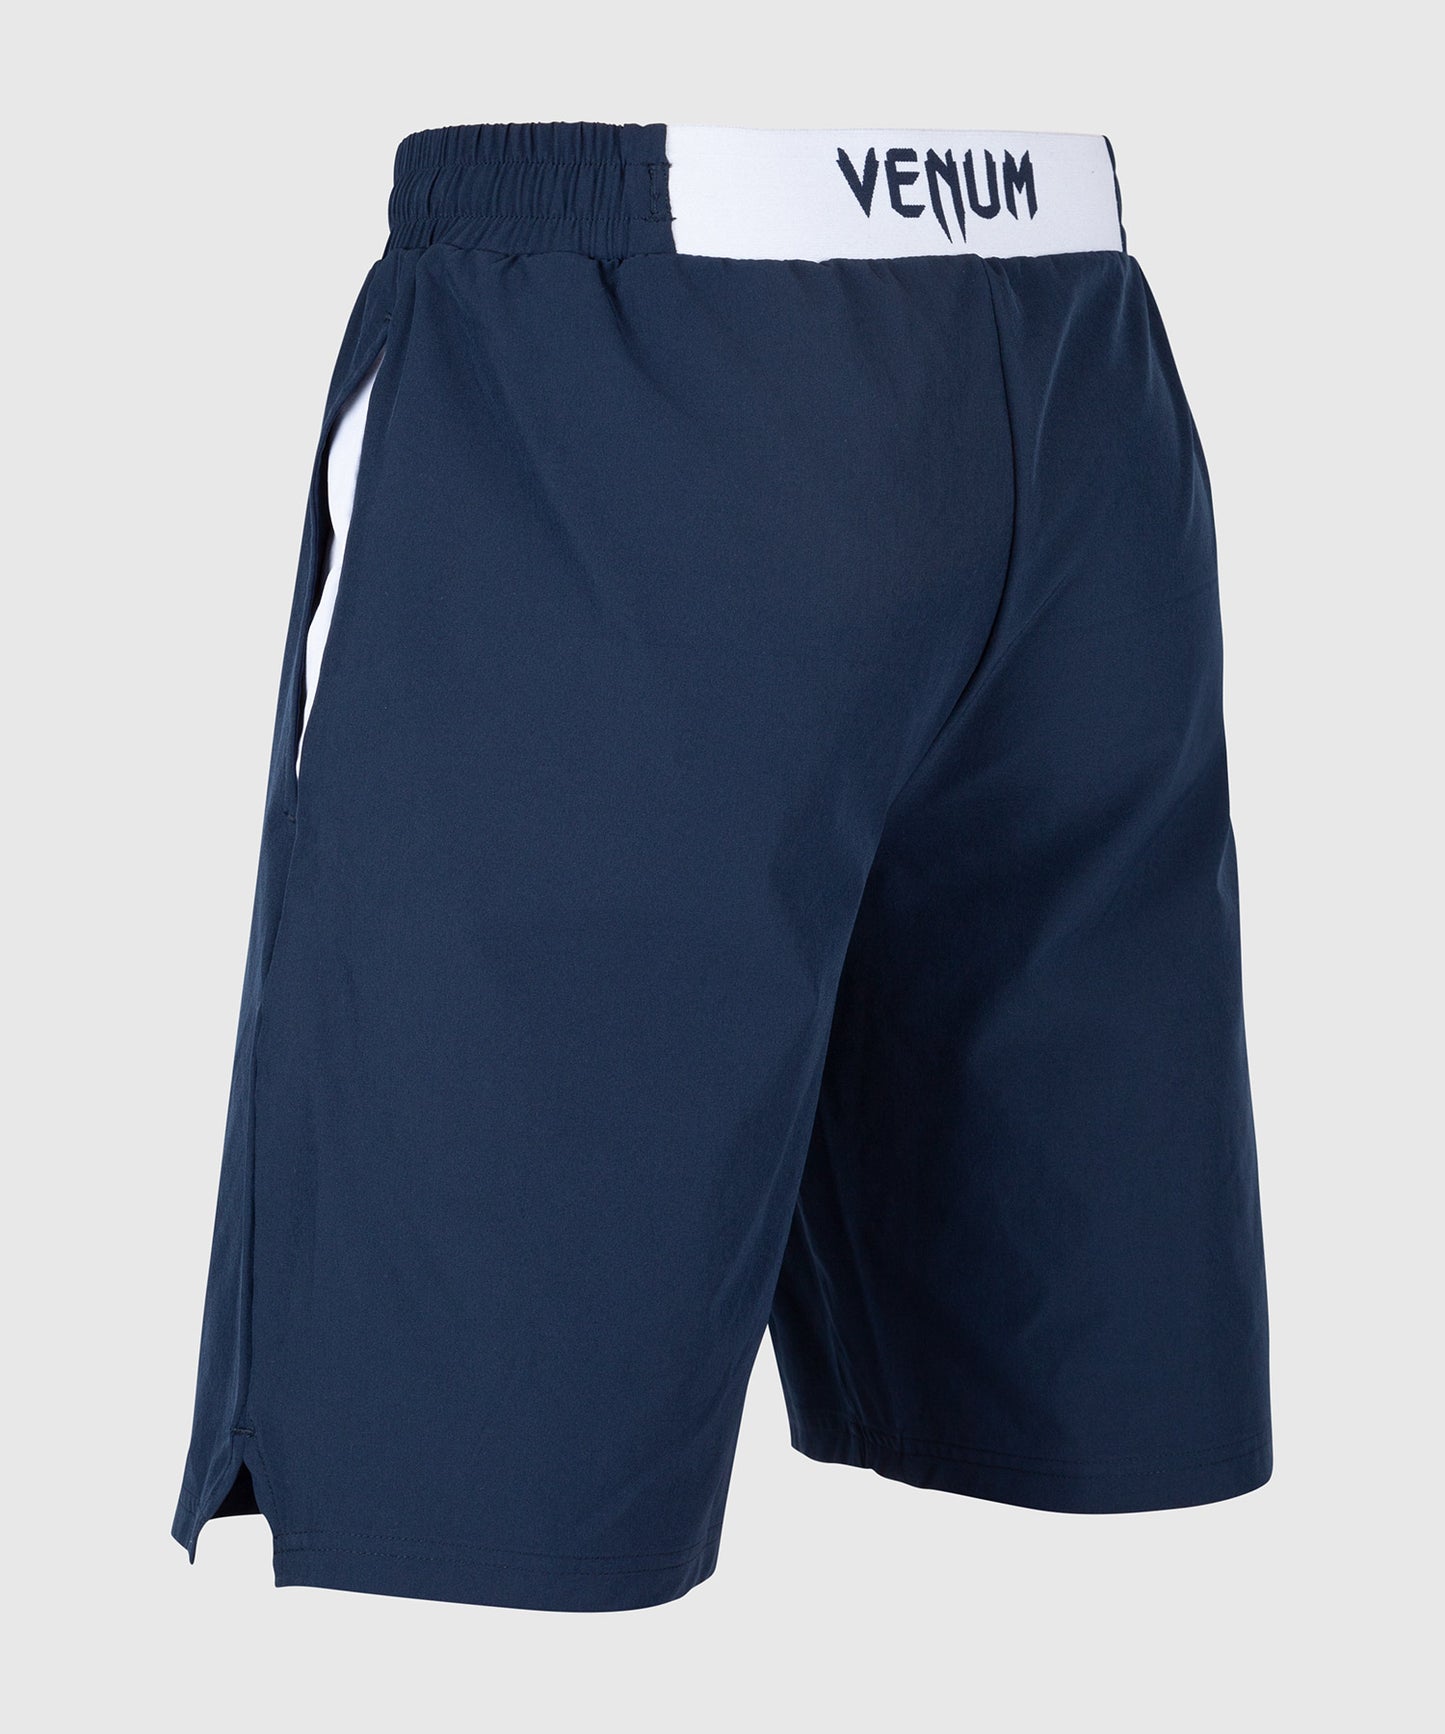 Venum Classic-Trainingsshorts - Marineblau